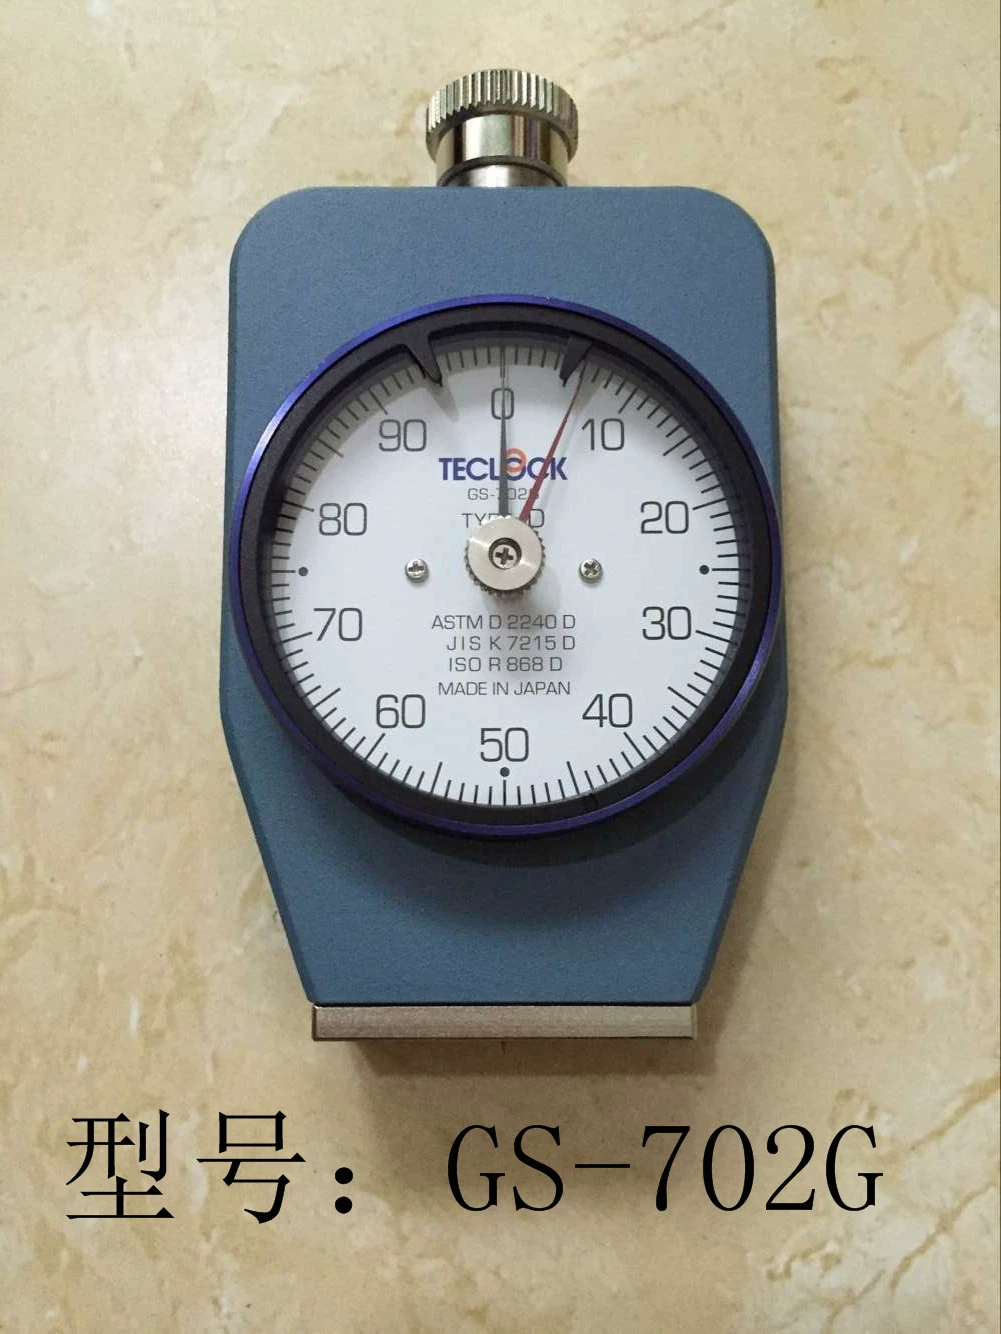 Máy đo độ cứng loại TECLOCK Shore C của Nhật Bản Máy đo độ cứng loại D GS-701N GS-702 706 709N máy đo độ cứng vicker hiệu chuẩn máy đo độ cứng Máy đo độ cứng